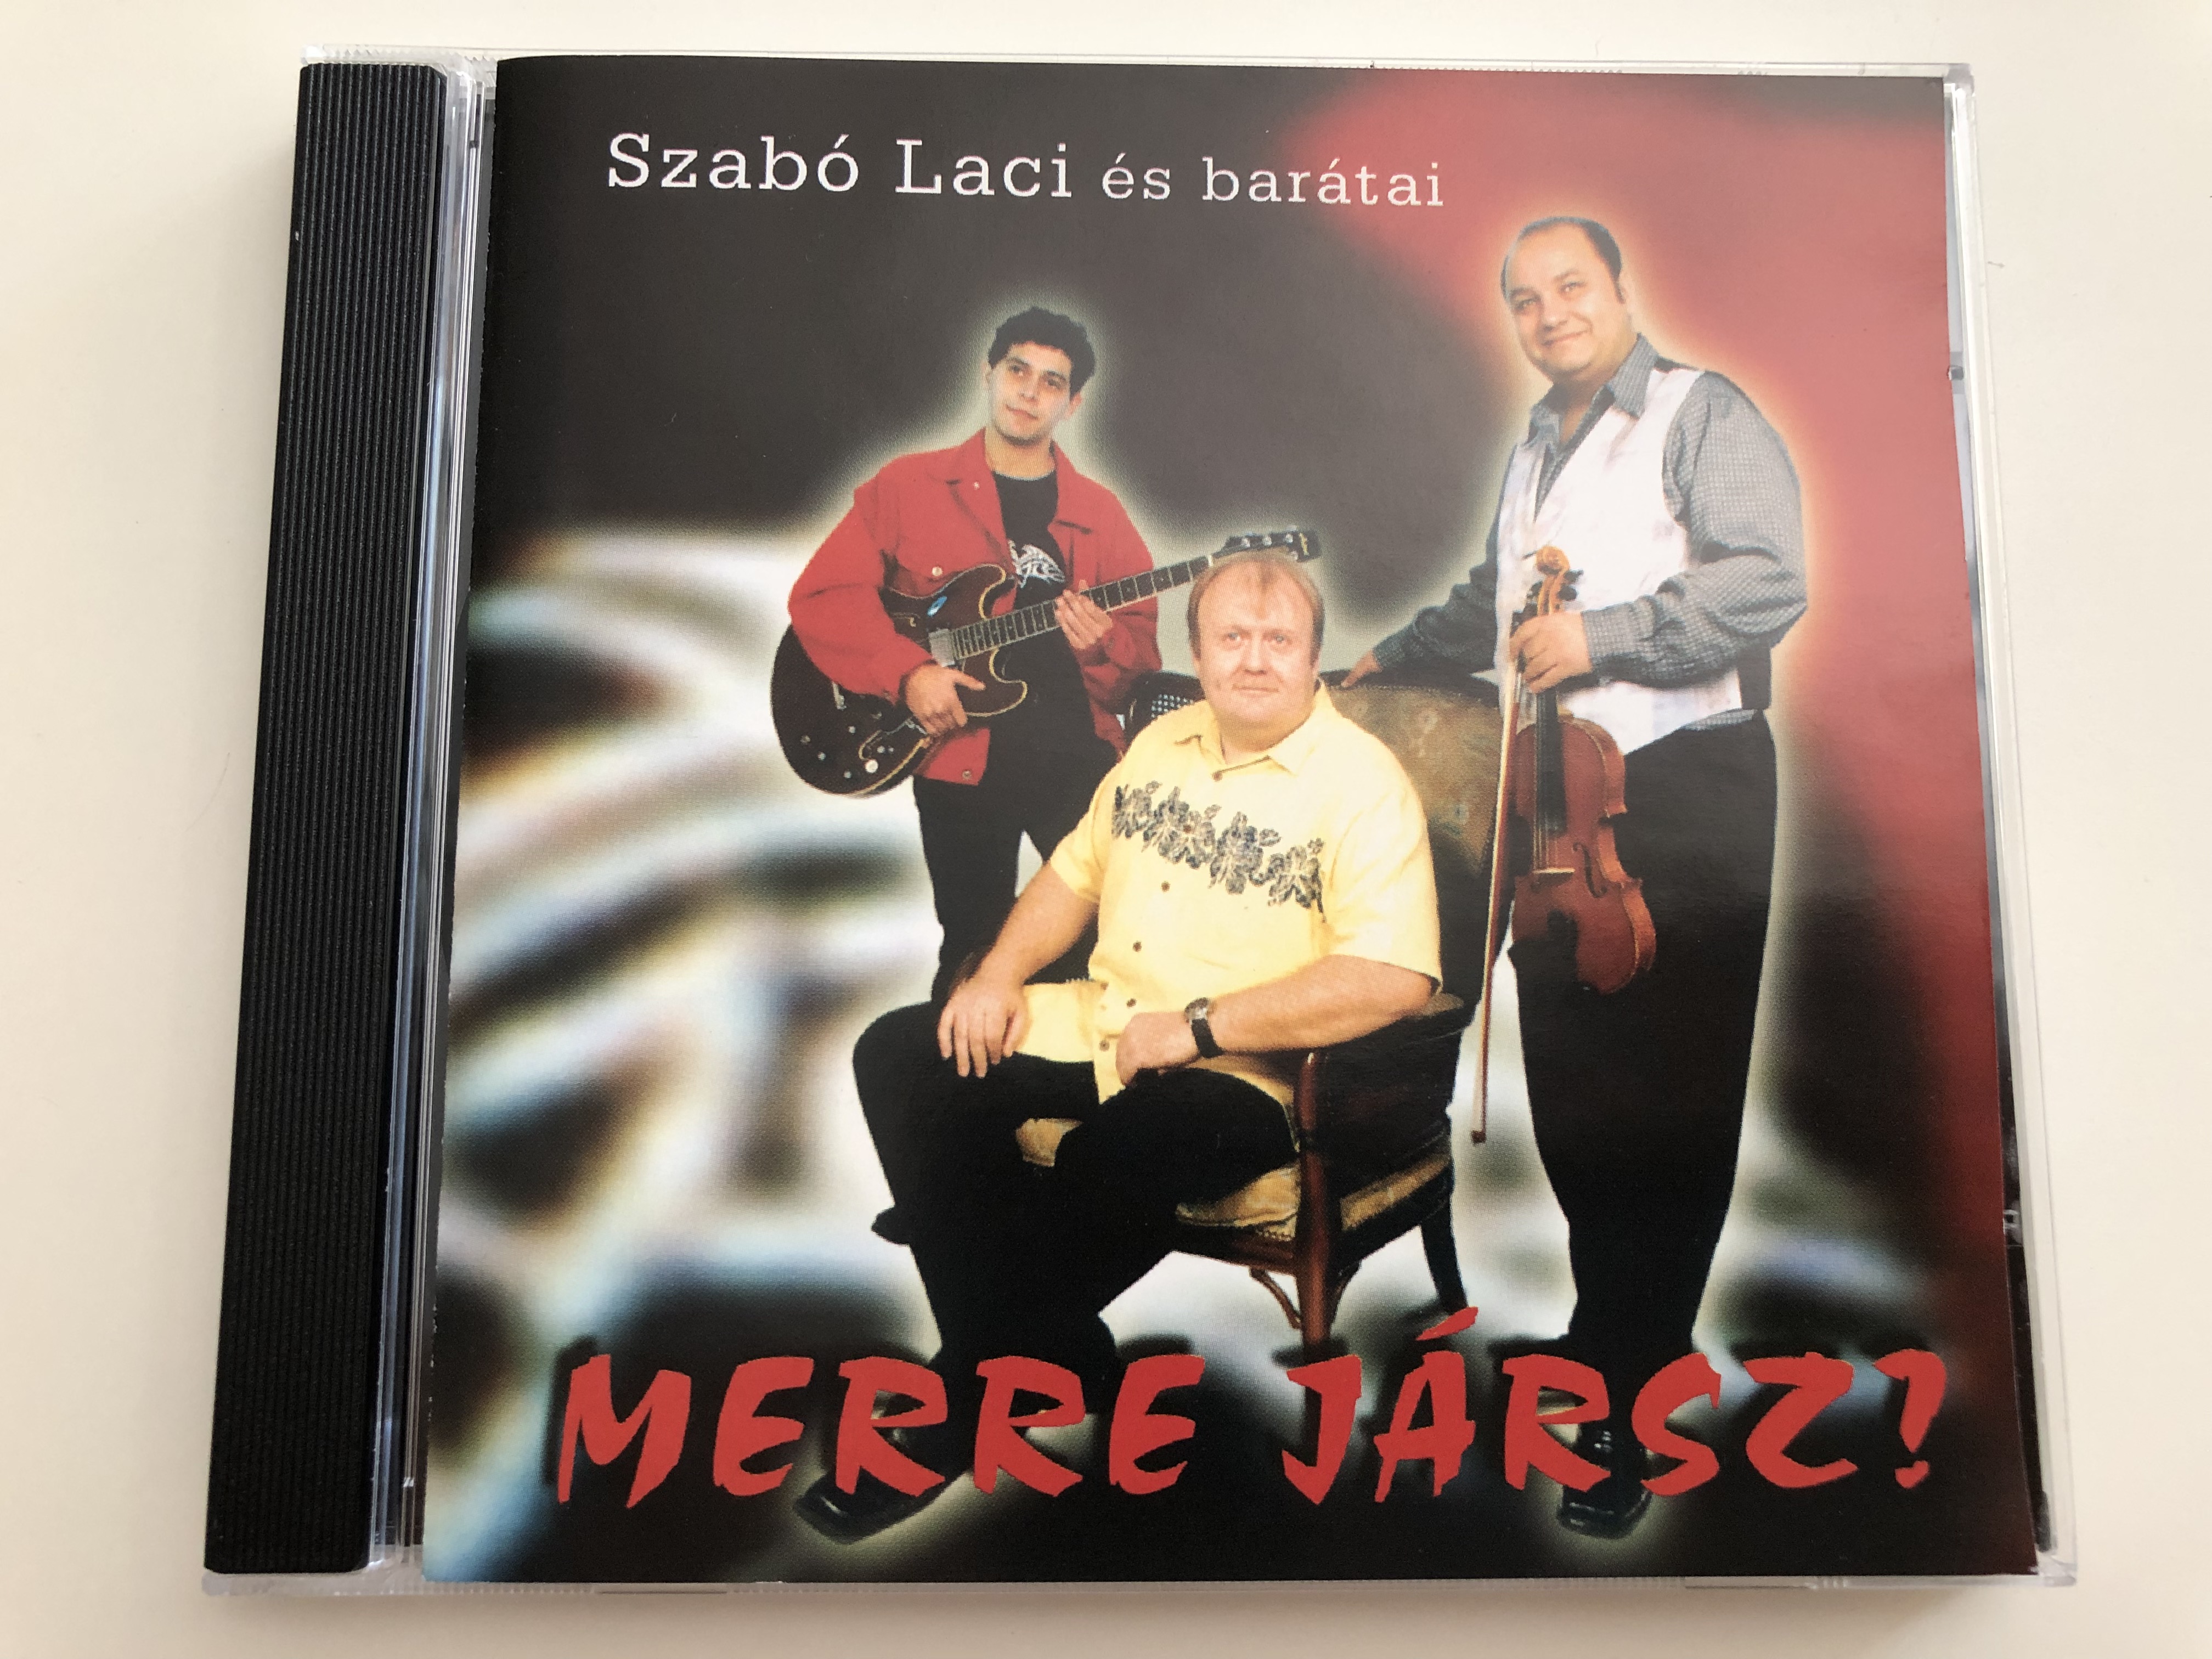 szab-laci-s-bar-tai-merre-j-rsz-audio-cd-2004-szab-laci-lakatos-k-roly-horv-th-roland-sztojka-zsolt-1-.jpg